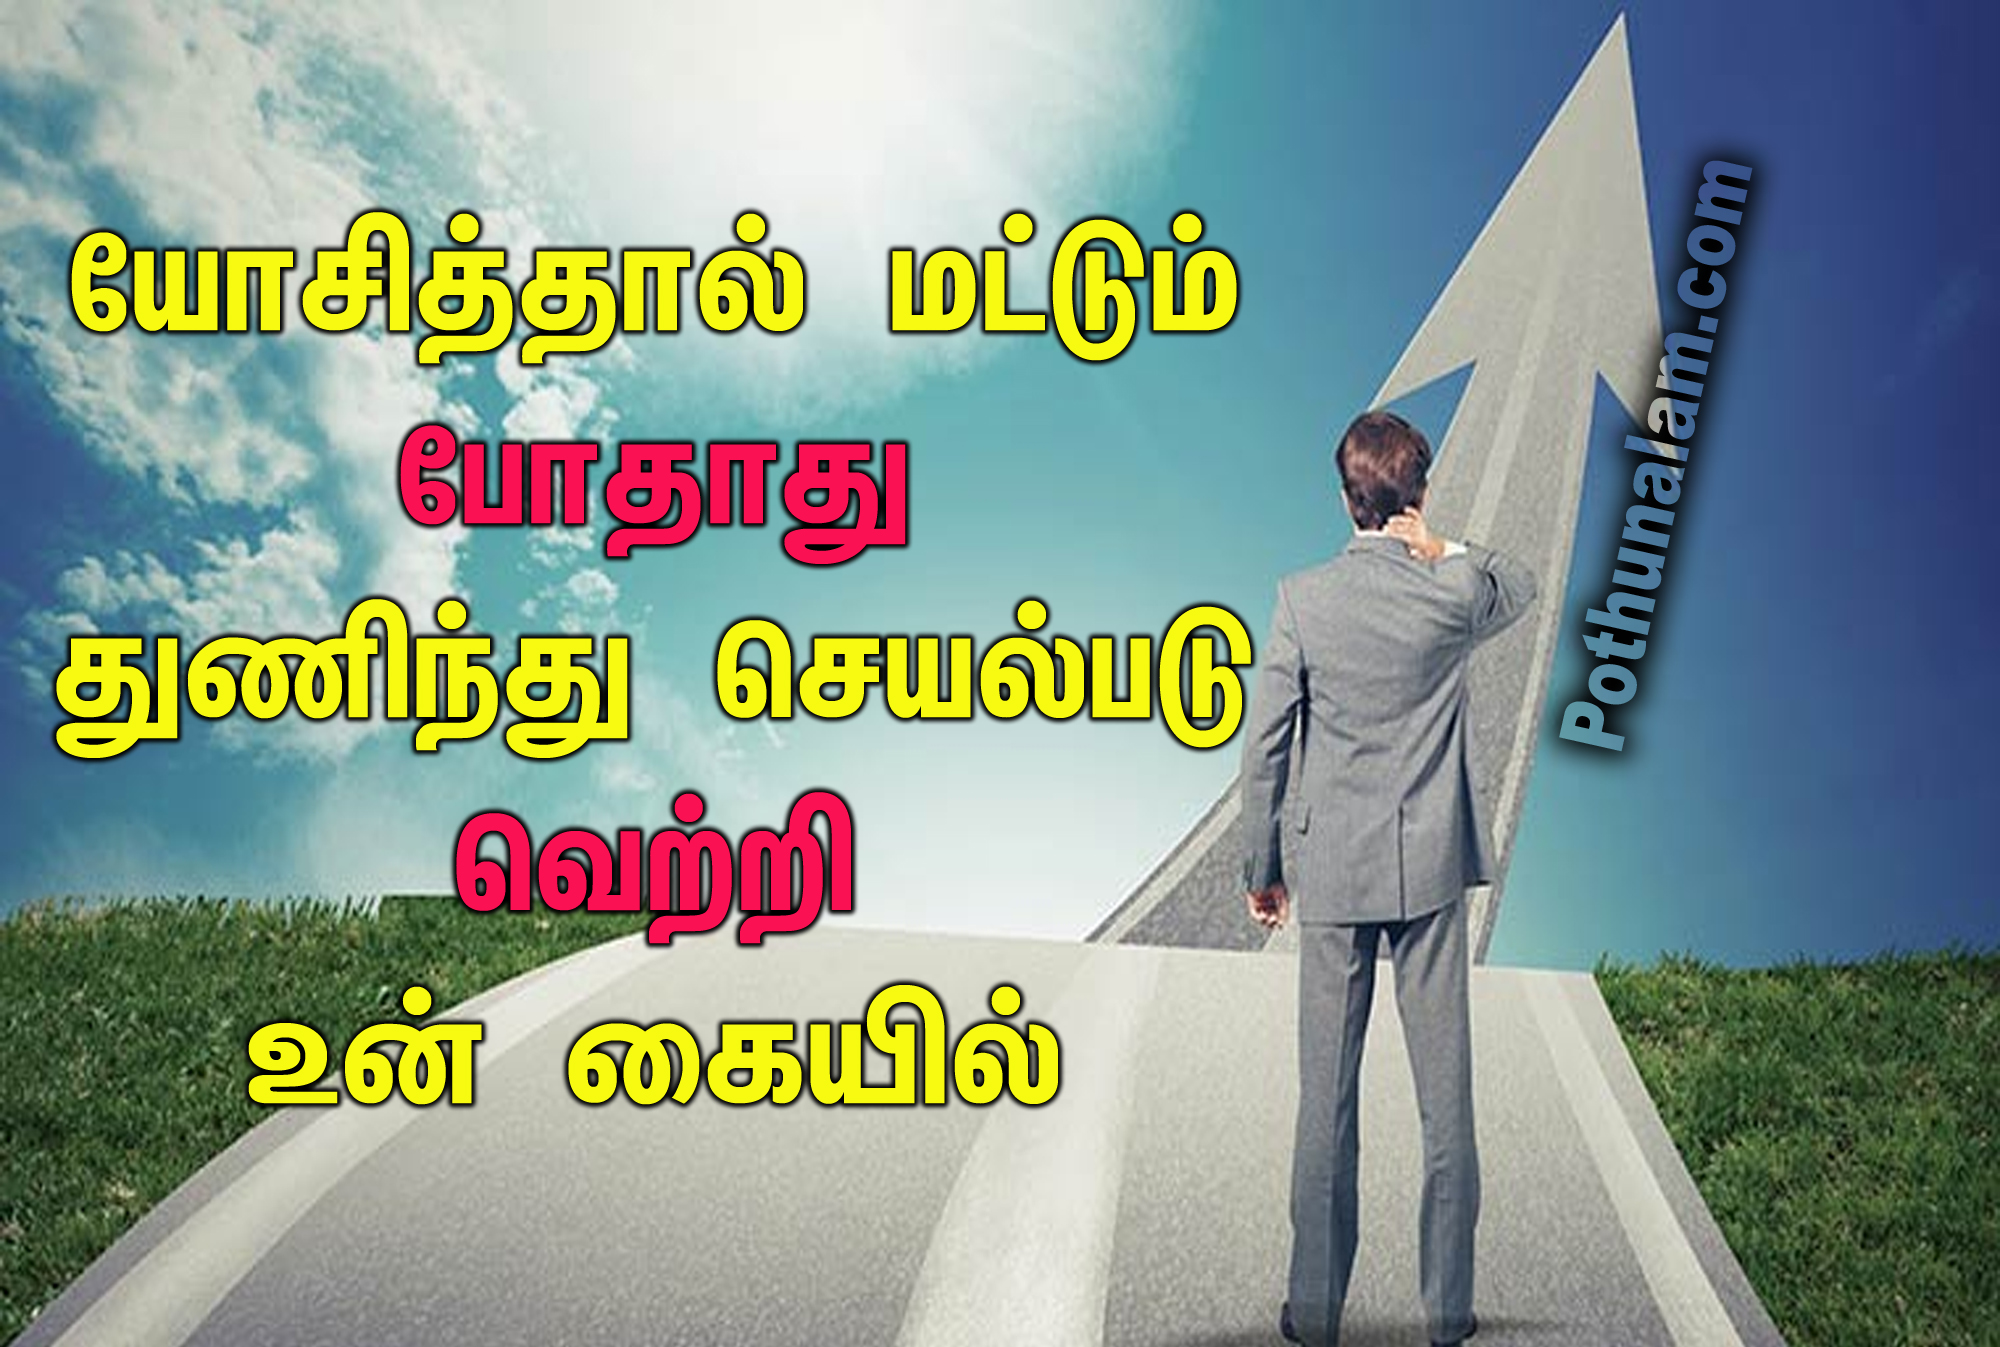 Super Thathuvam in Tamil